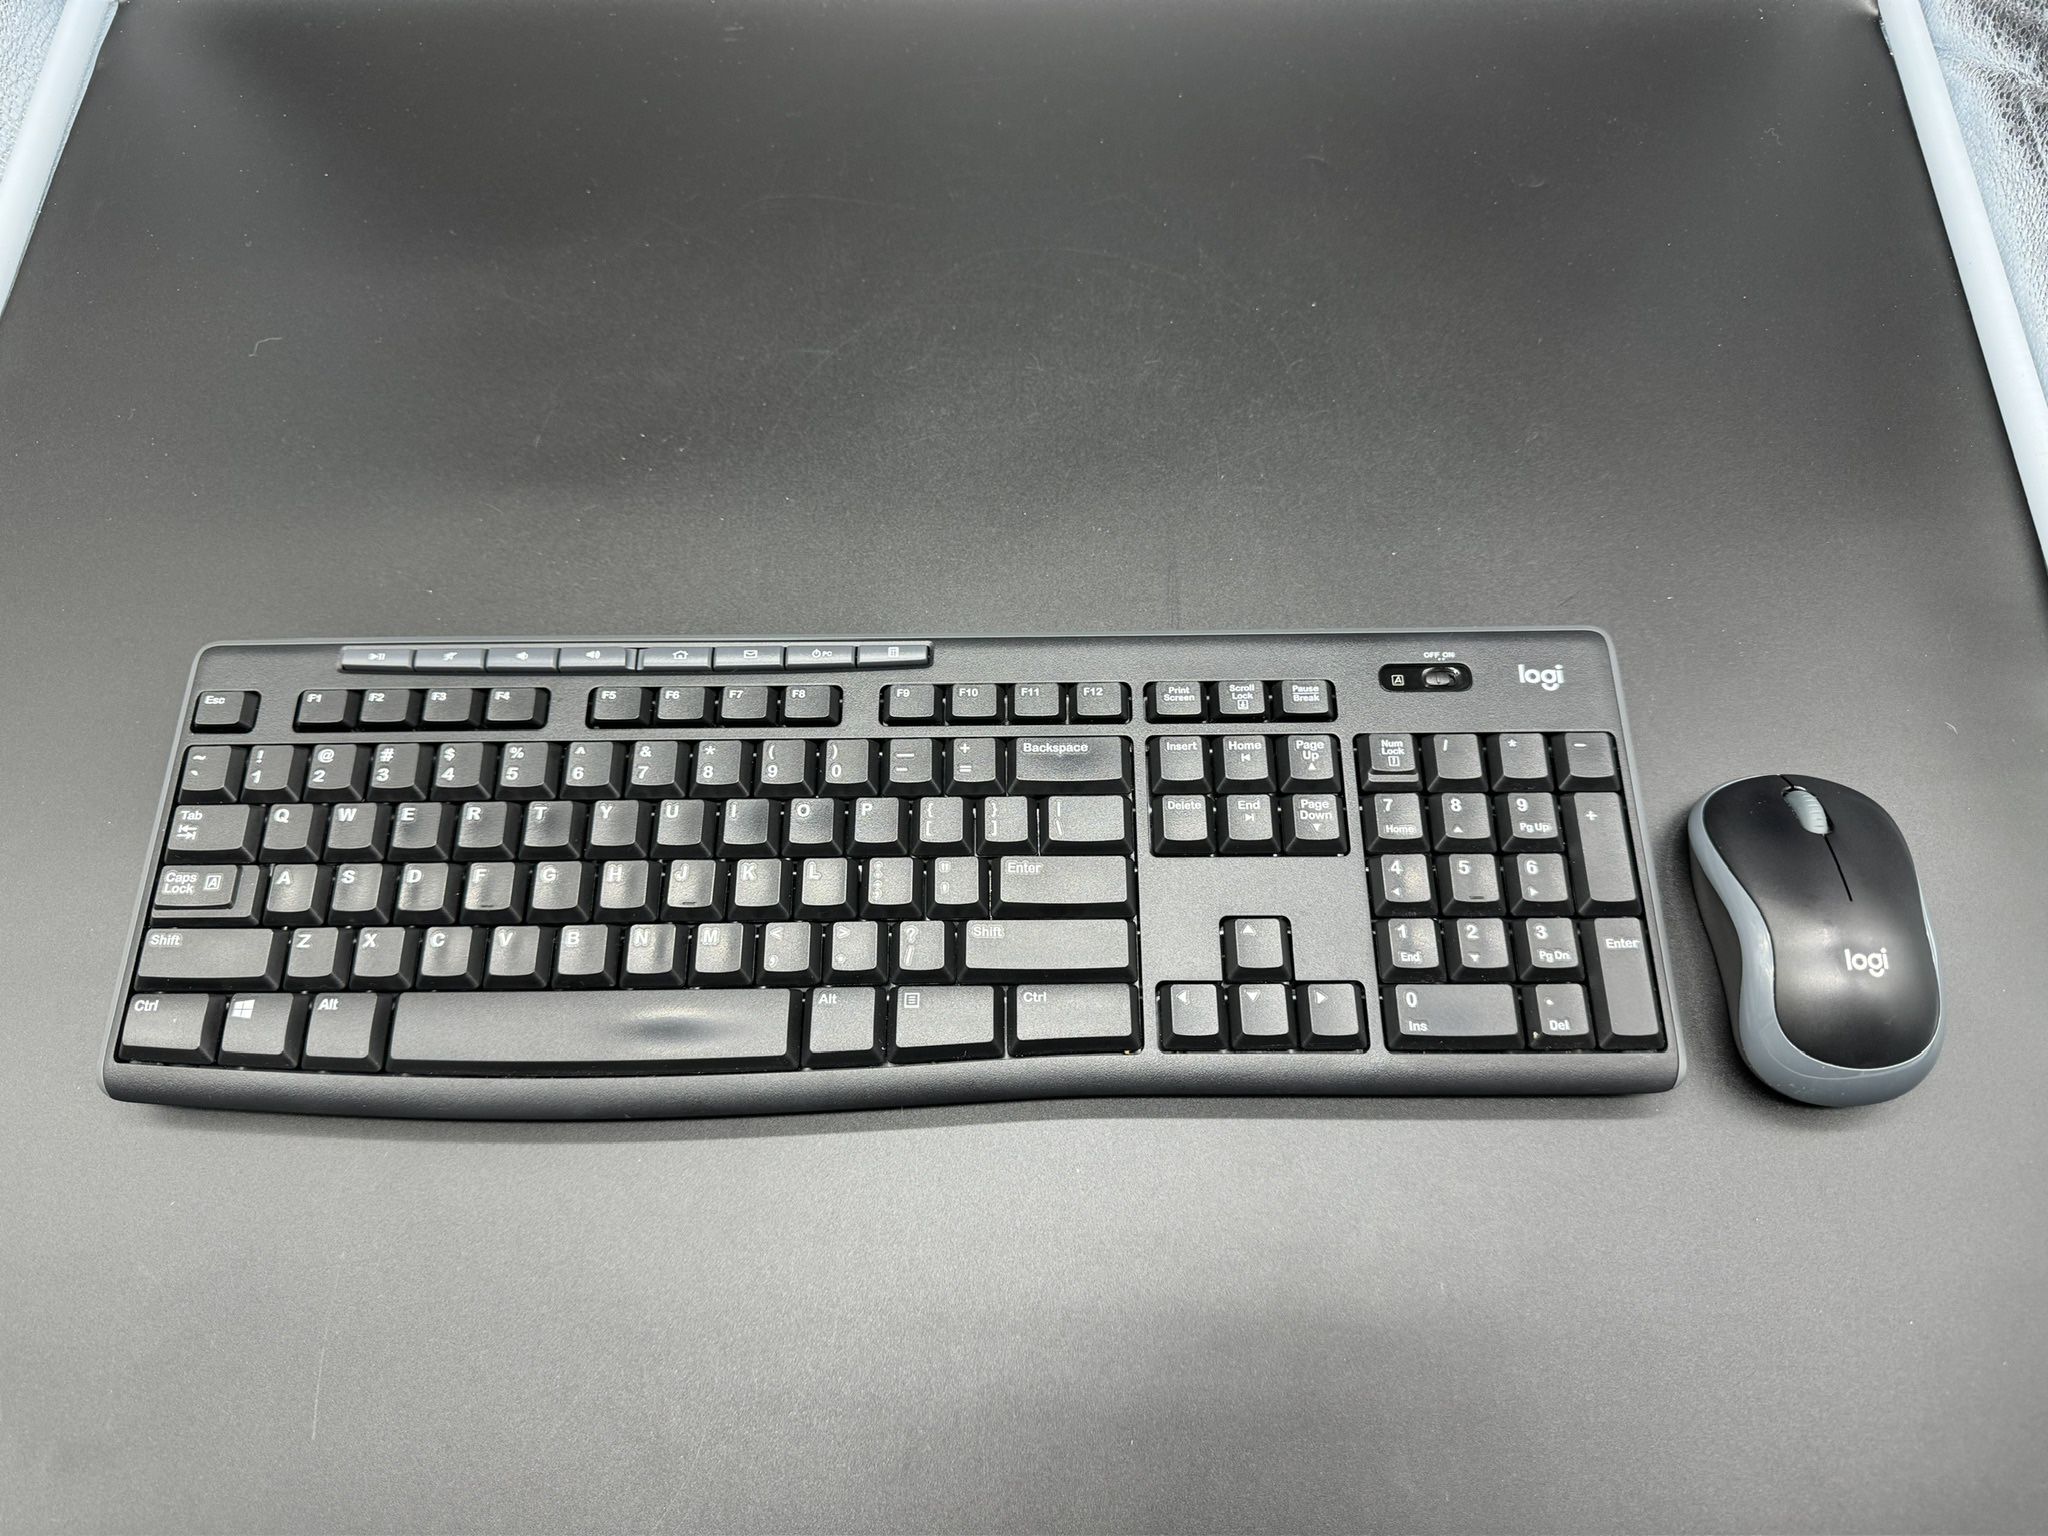 Logi(Logitech) M185 Wireless Keyboard and Mouse USB 